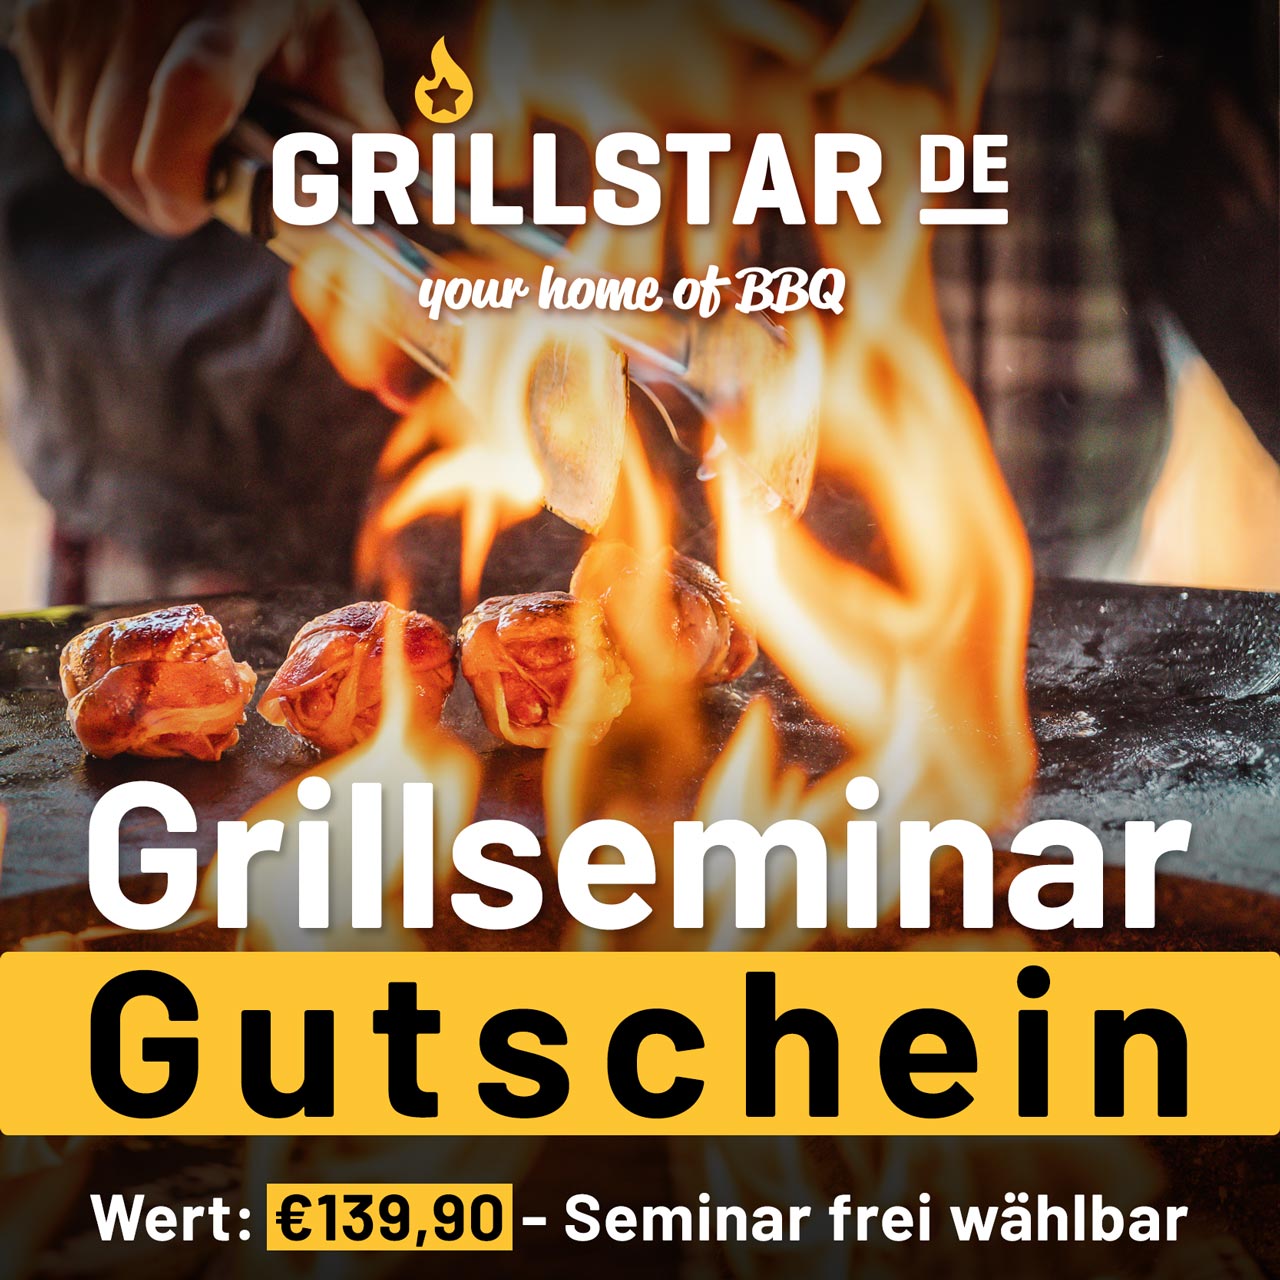 Grillseminar - Gutschein €139,90